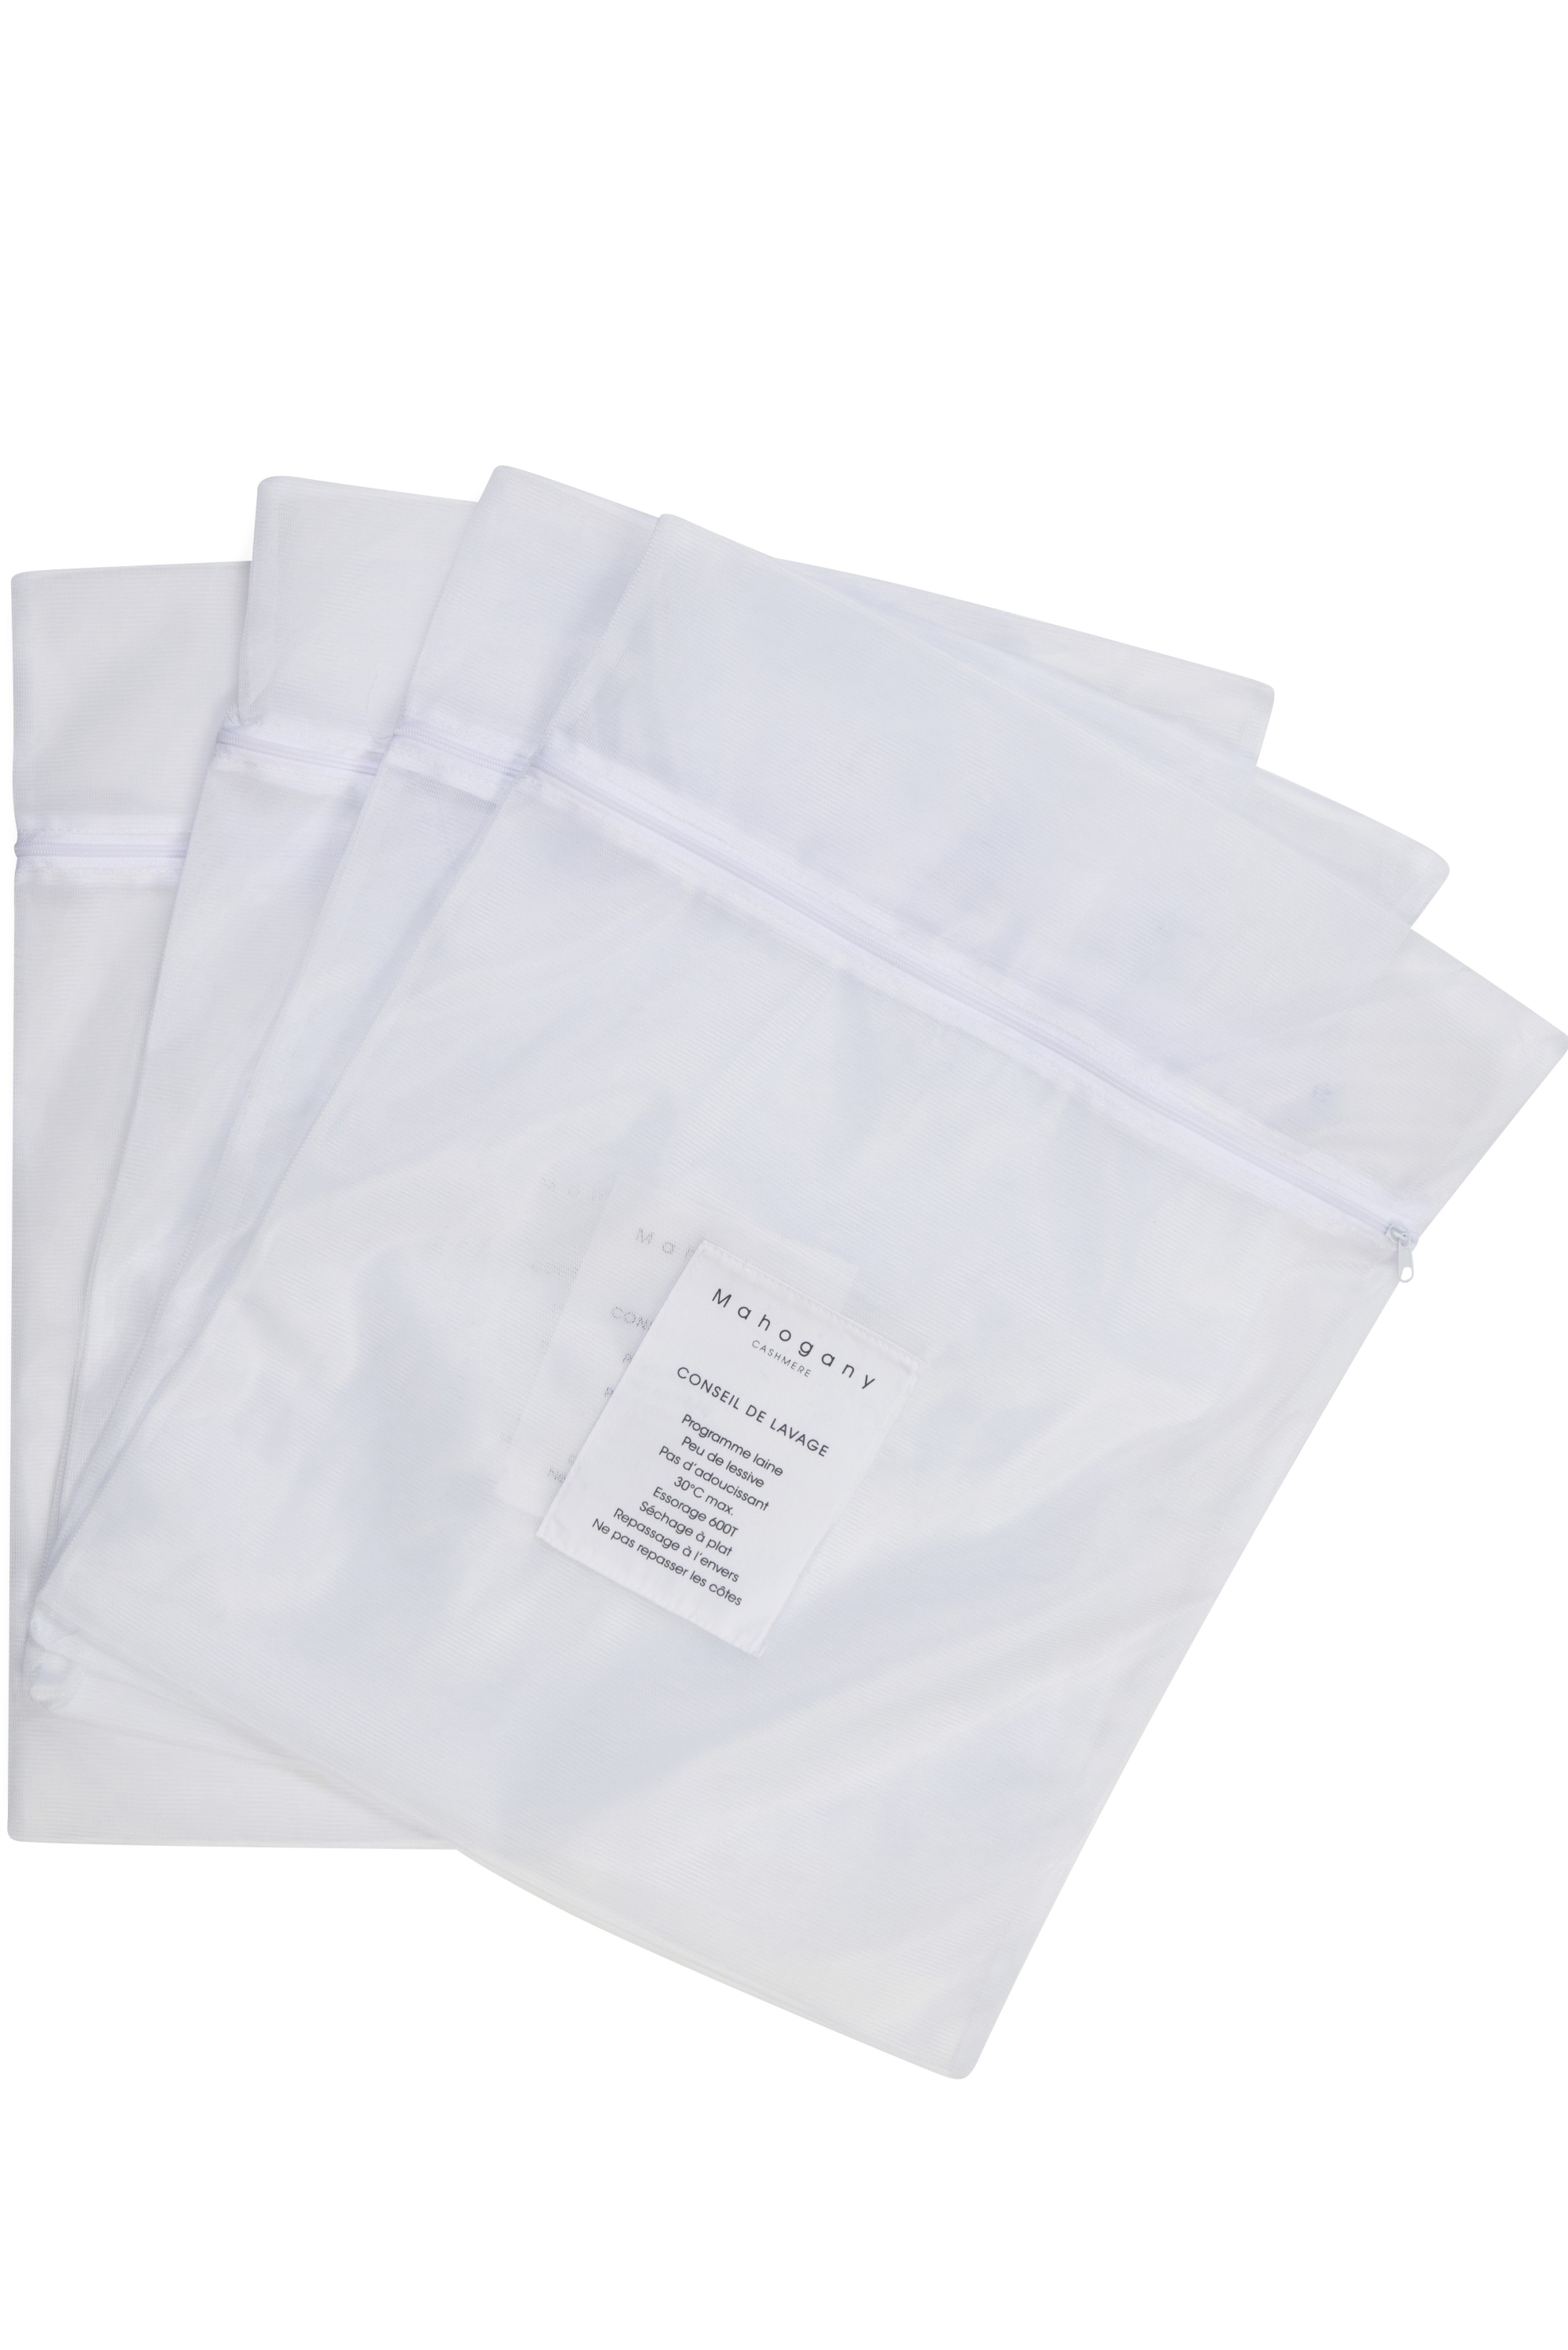 Washing bag accessoires care of cashmere sac de lavage white einheitsgrouml sze